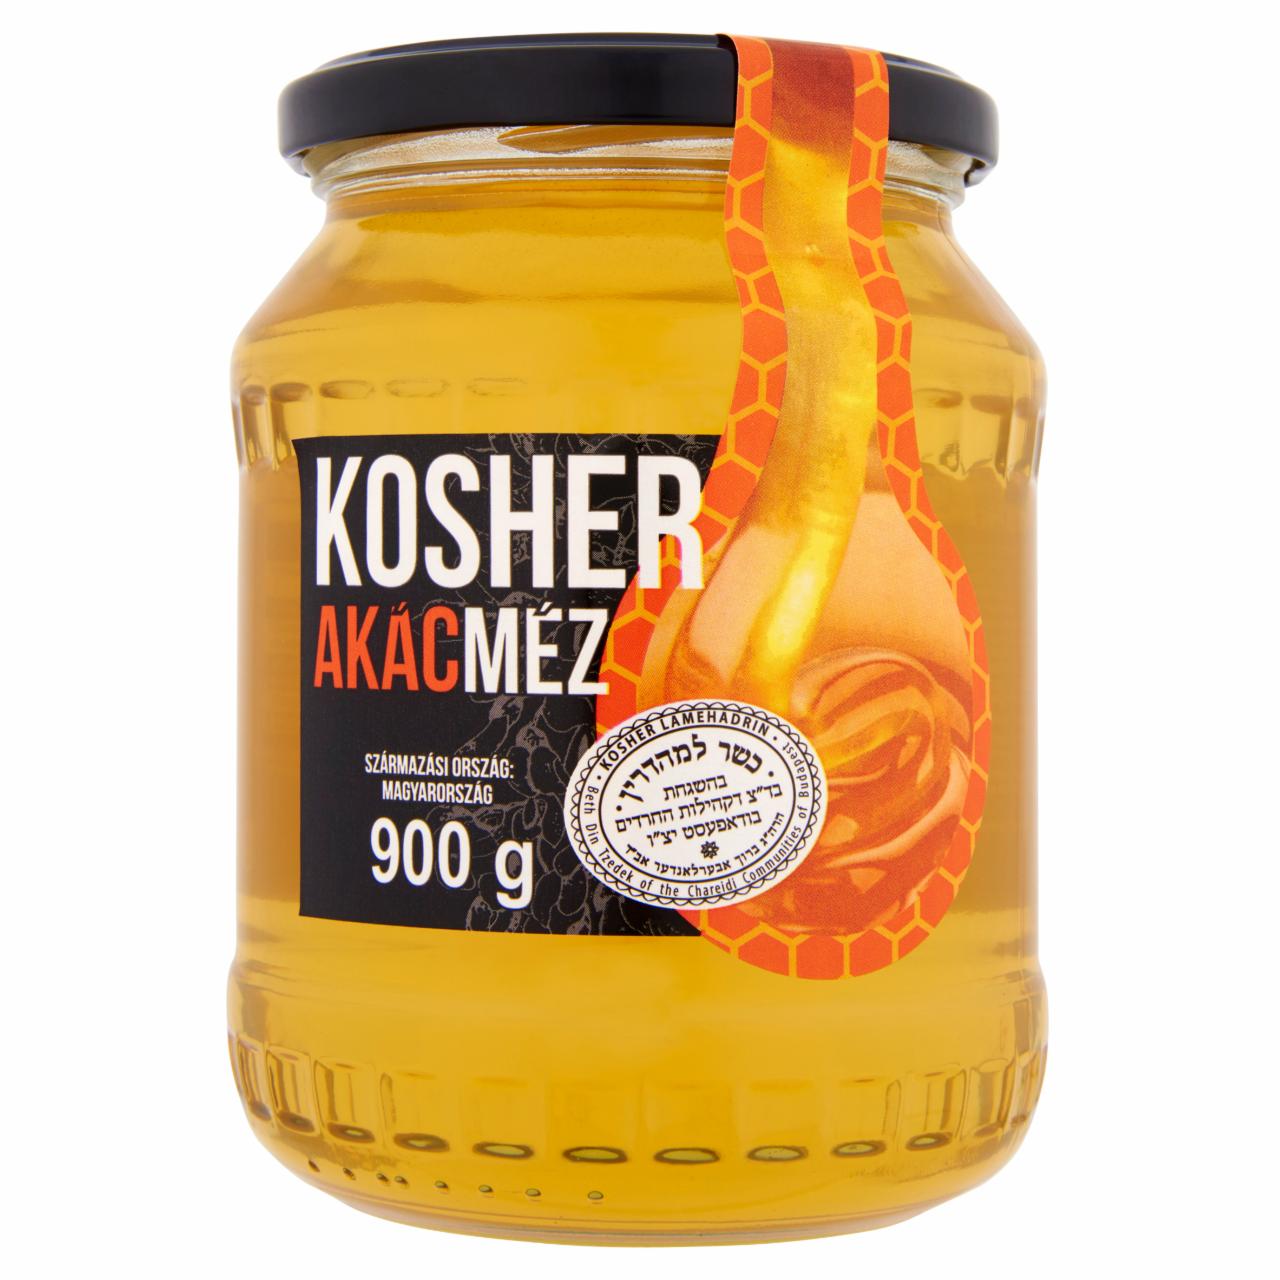 Képek - Kosher akácméz 900 g